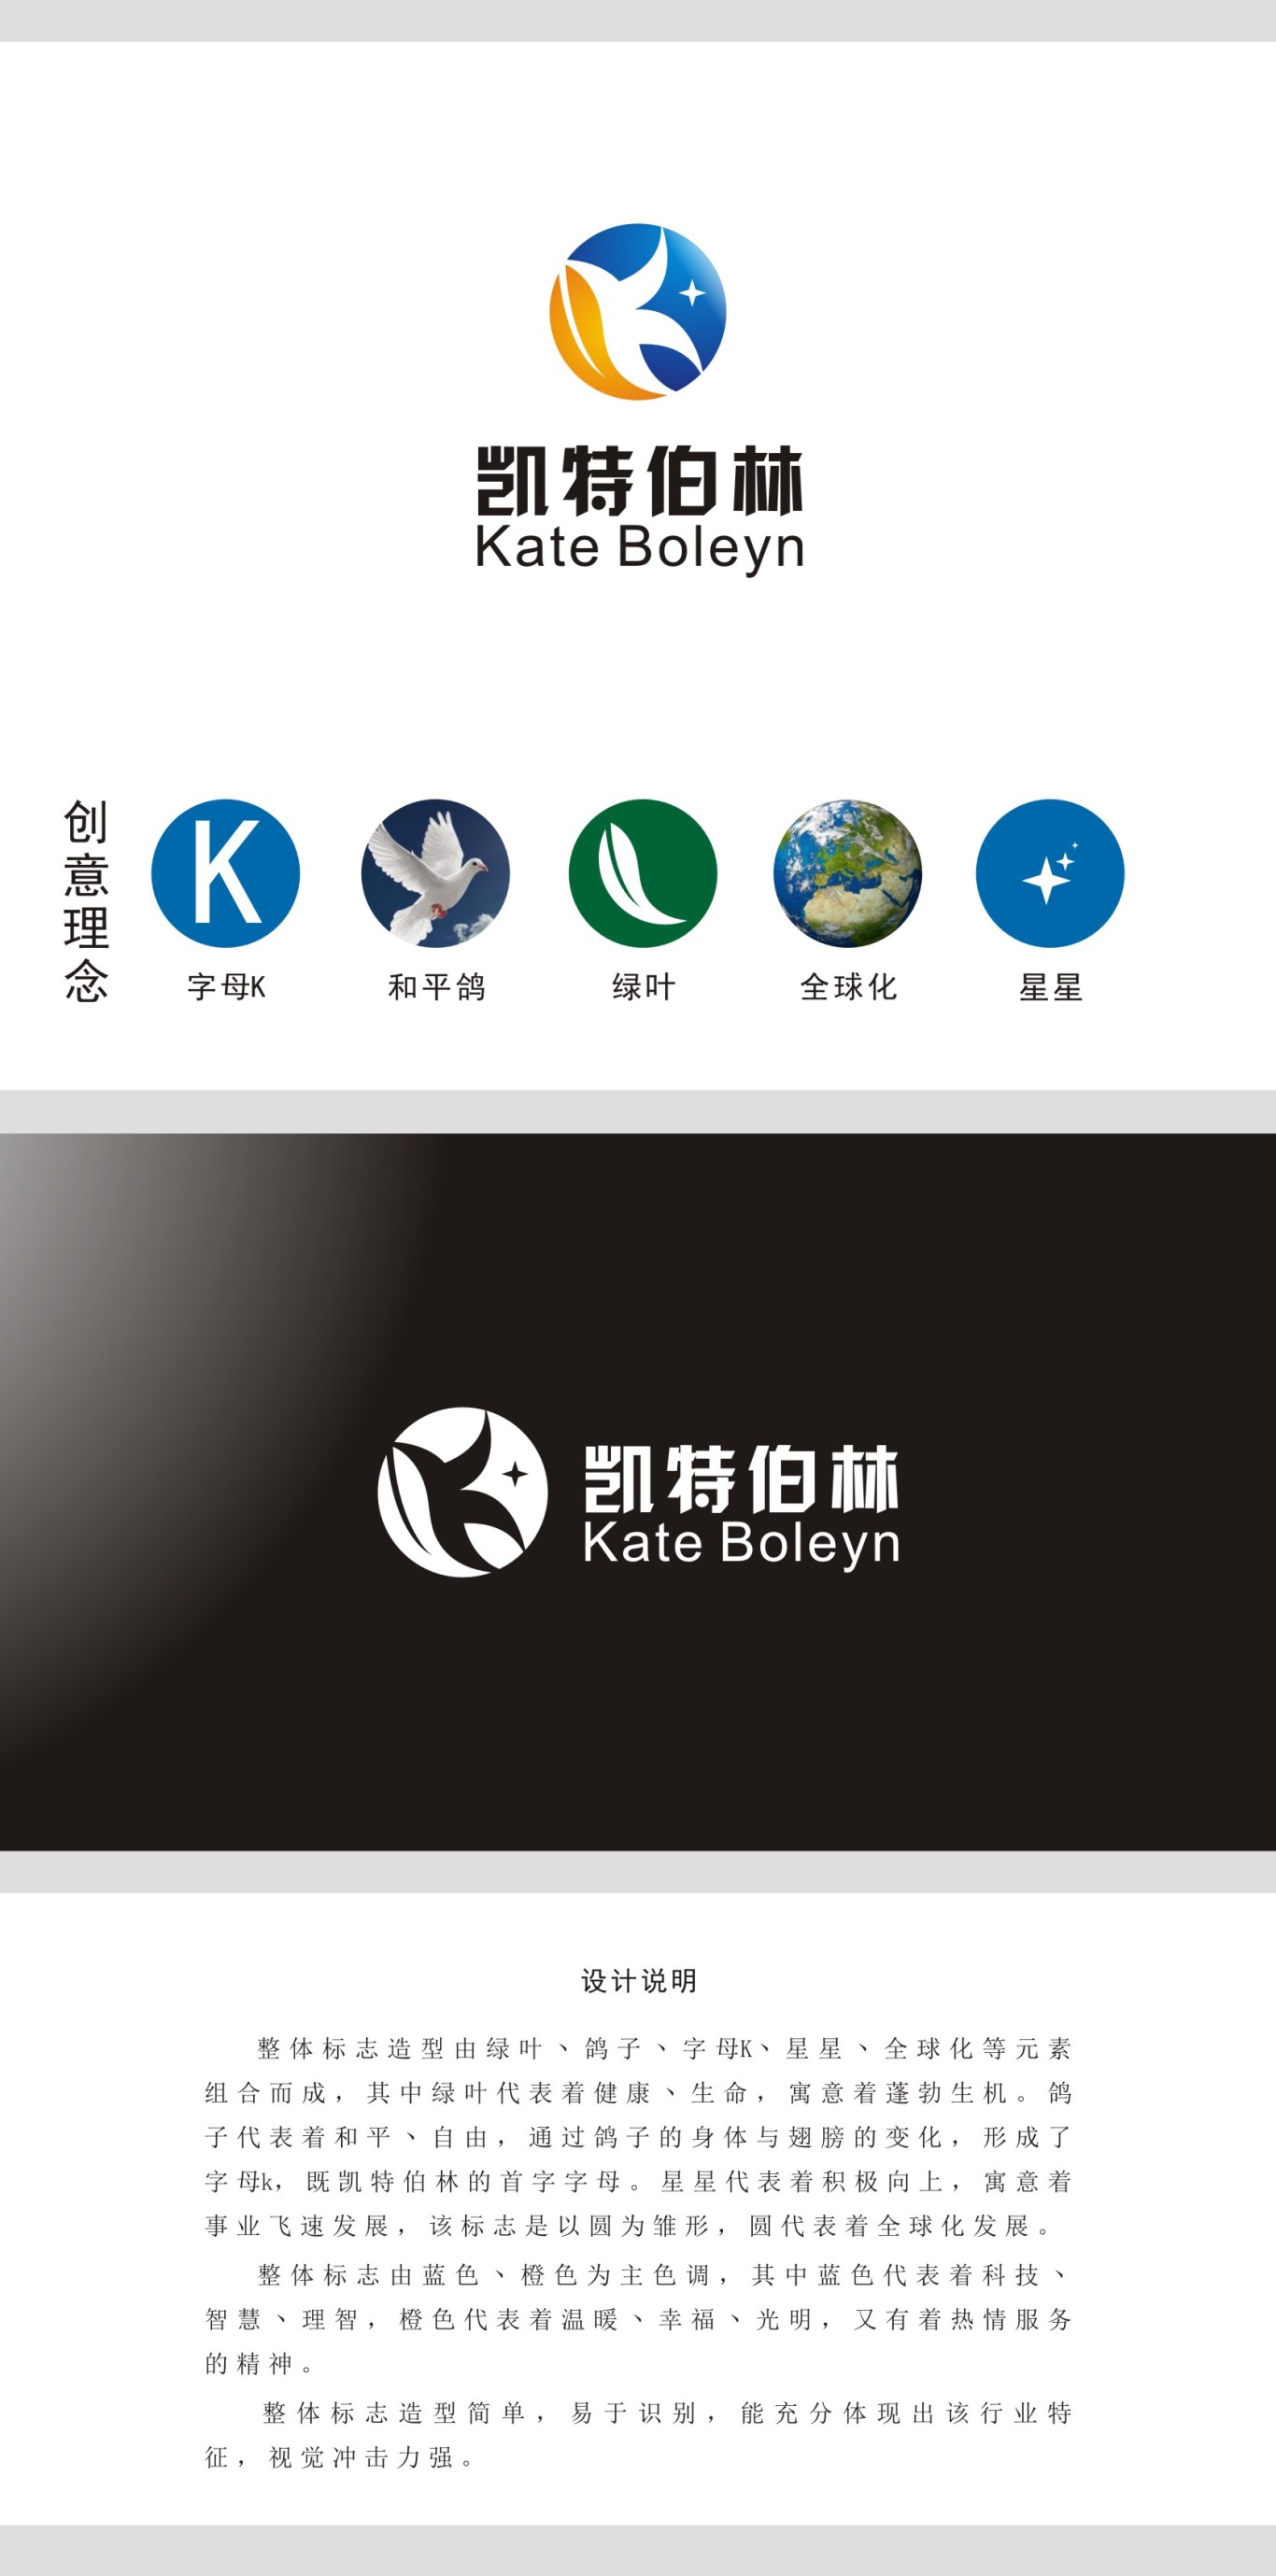 北京凱特利商貿有限公司logo設計圖3